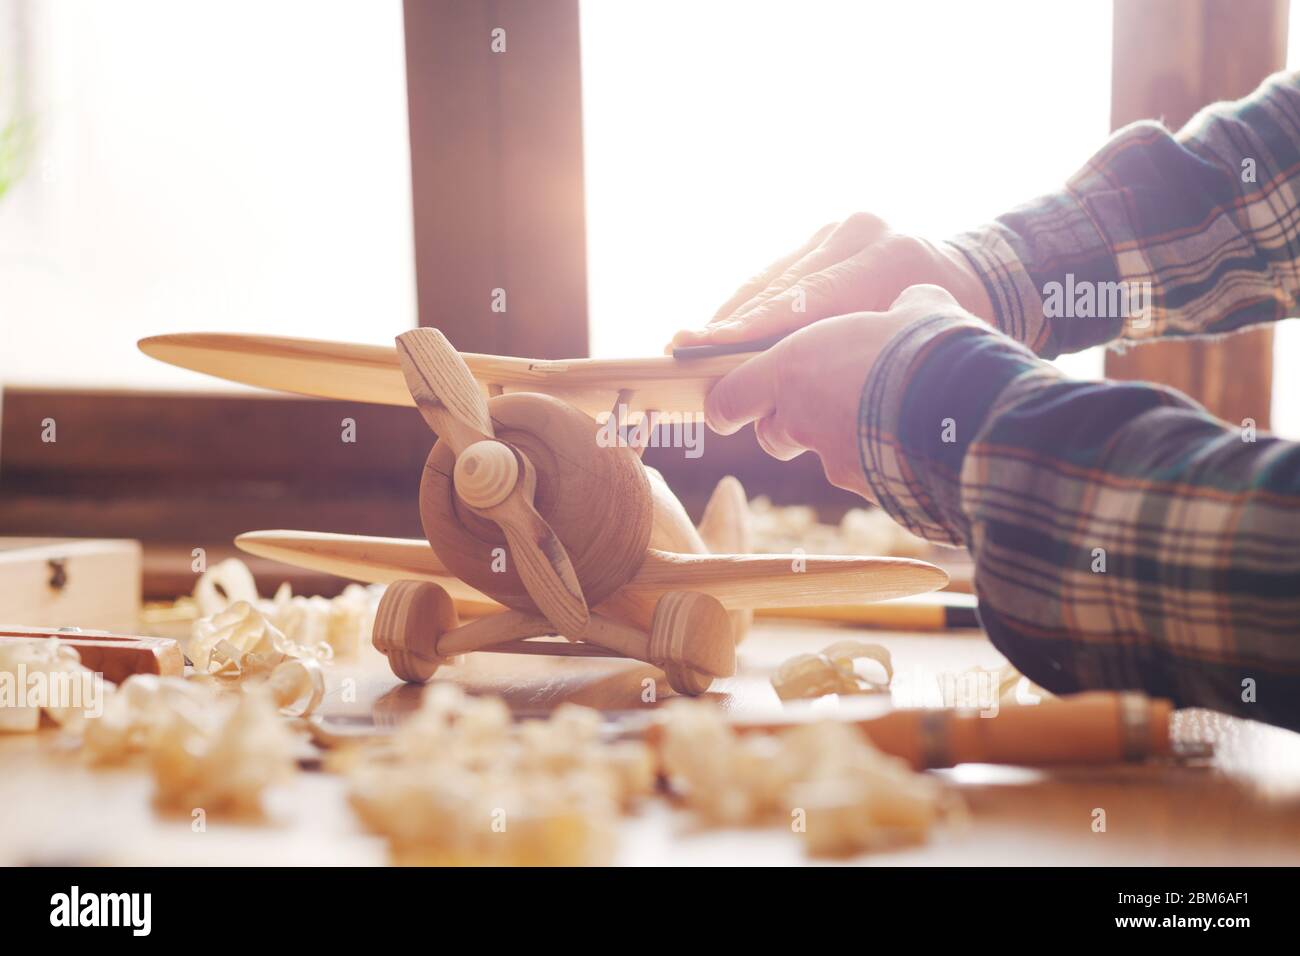 Artisan d'un lissage de surface en bois avec du papier de verre, les outils et les copeaux de bois tout autour, les mains close up Banque D'Images